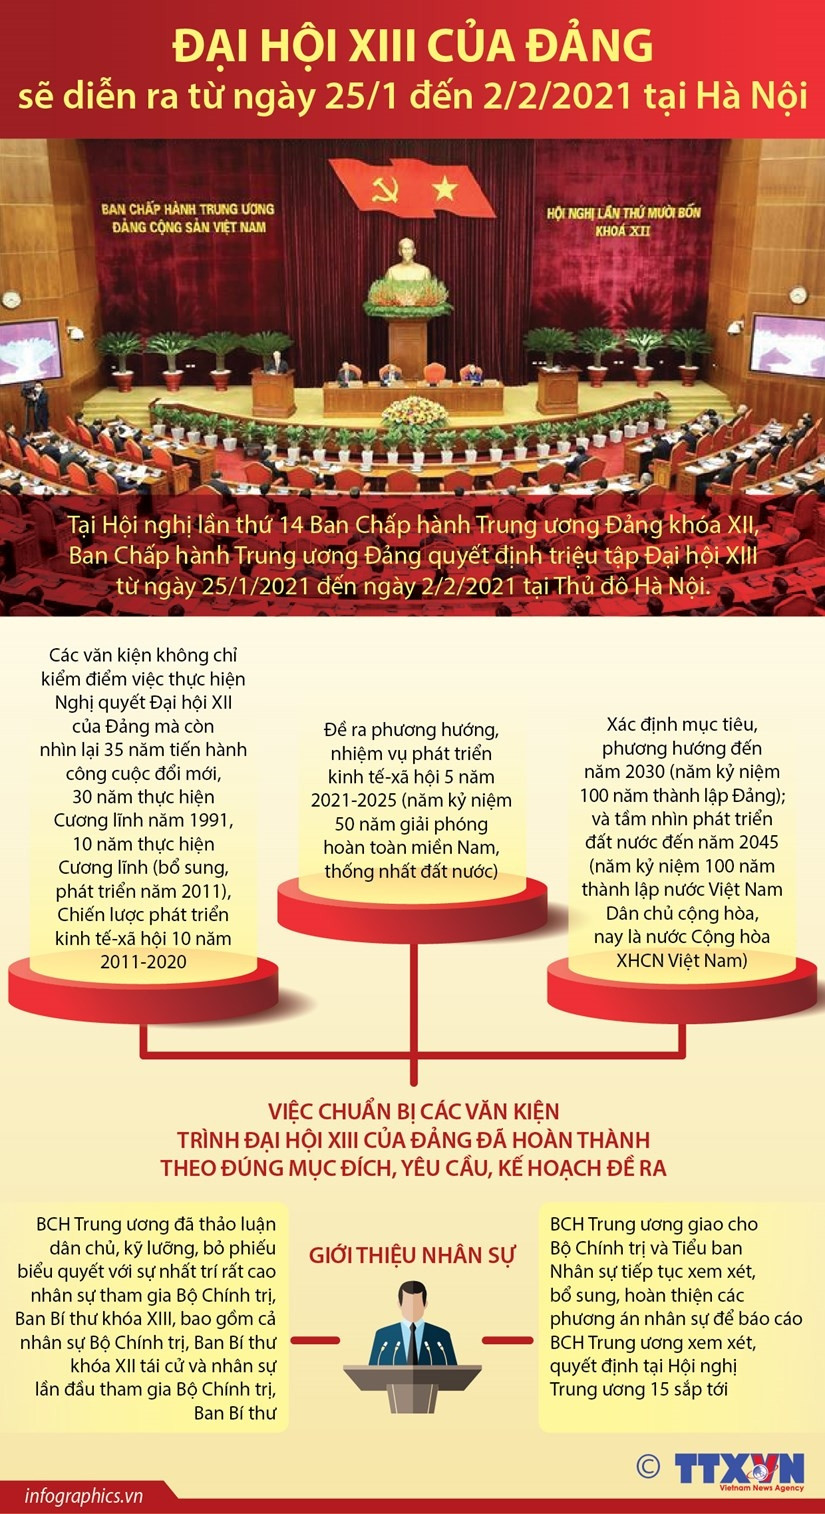 [Infographics] Dai hoi XIII cua Dang se dien ra khi nao? hinh anh 1